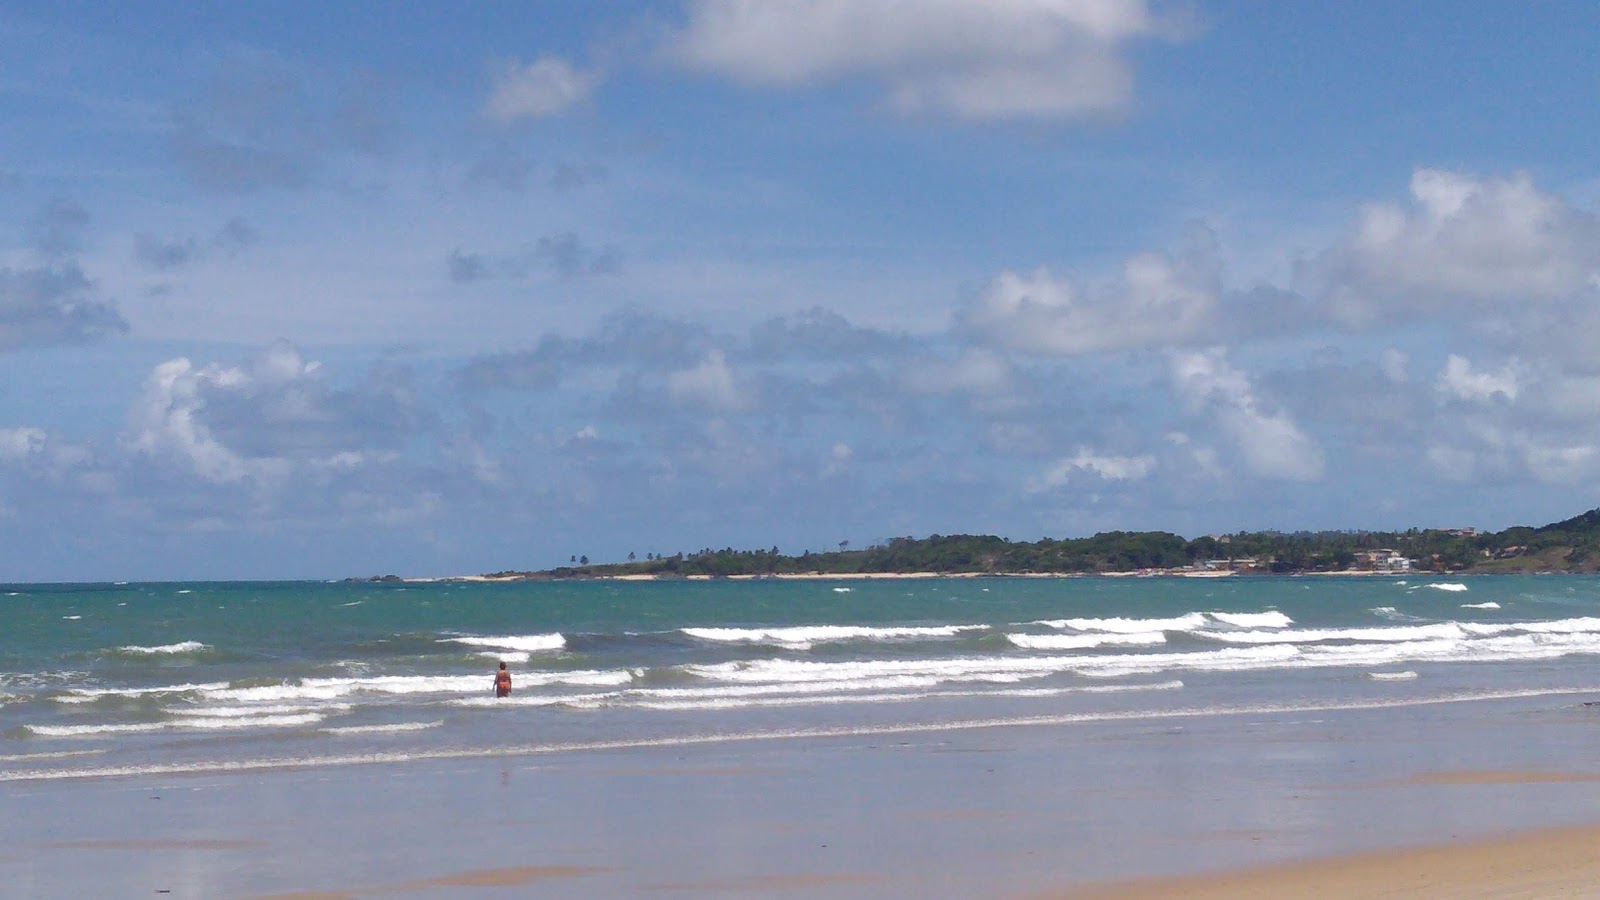 Foto af Praia das Caletas - populært sted blandt afslapningskendere